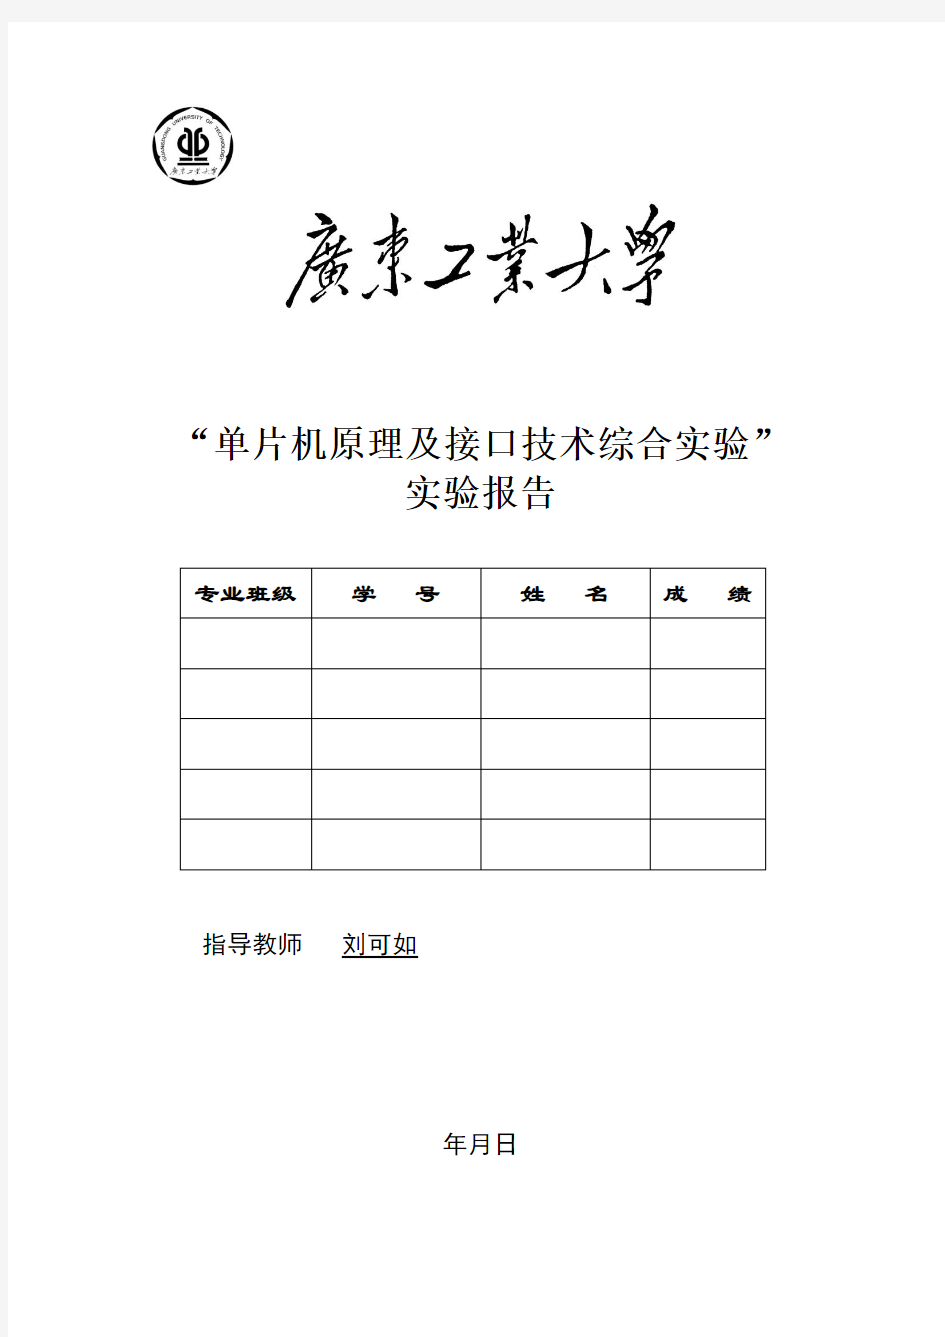 广东工业大学《单片机原理及接口技术综合实验》报告封面